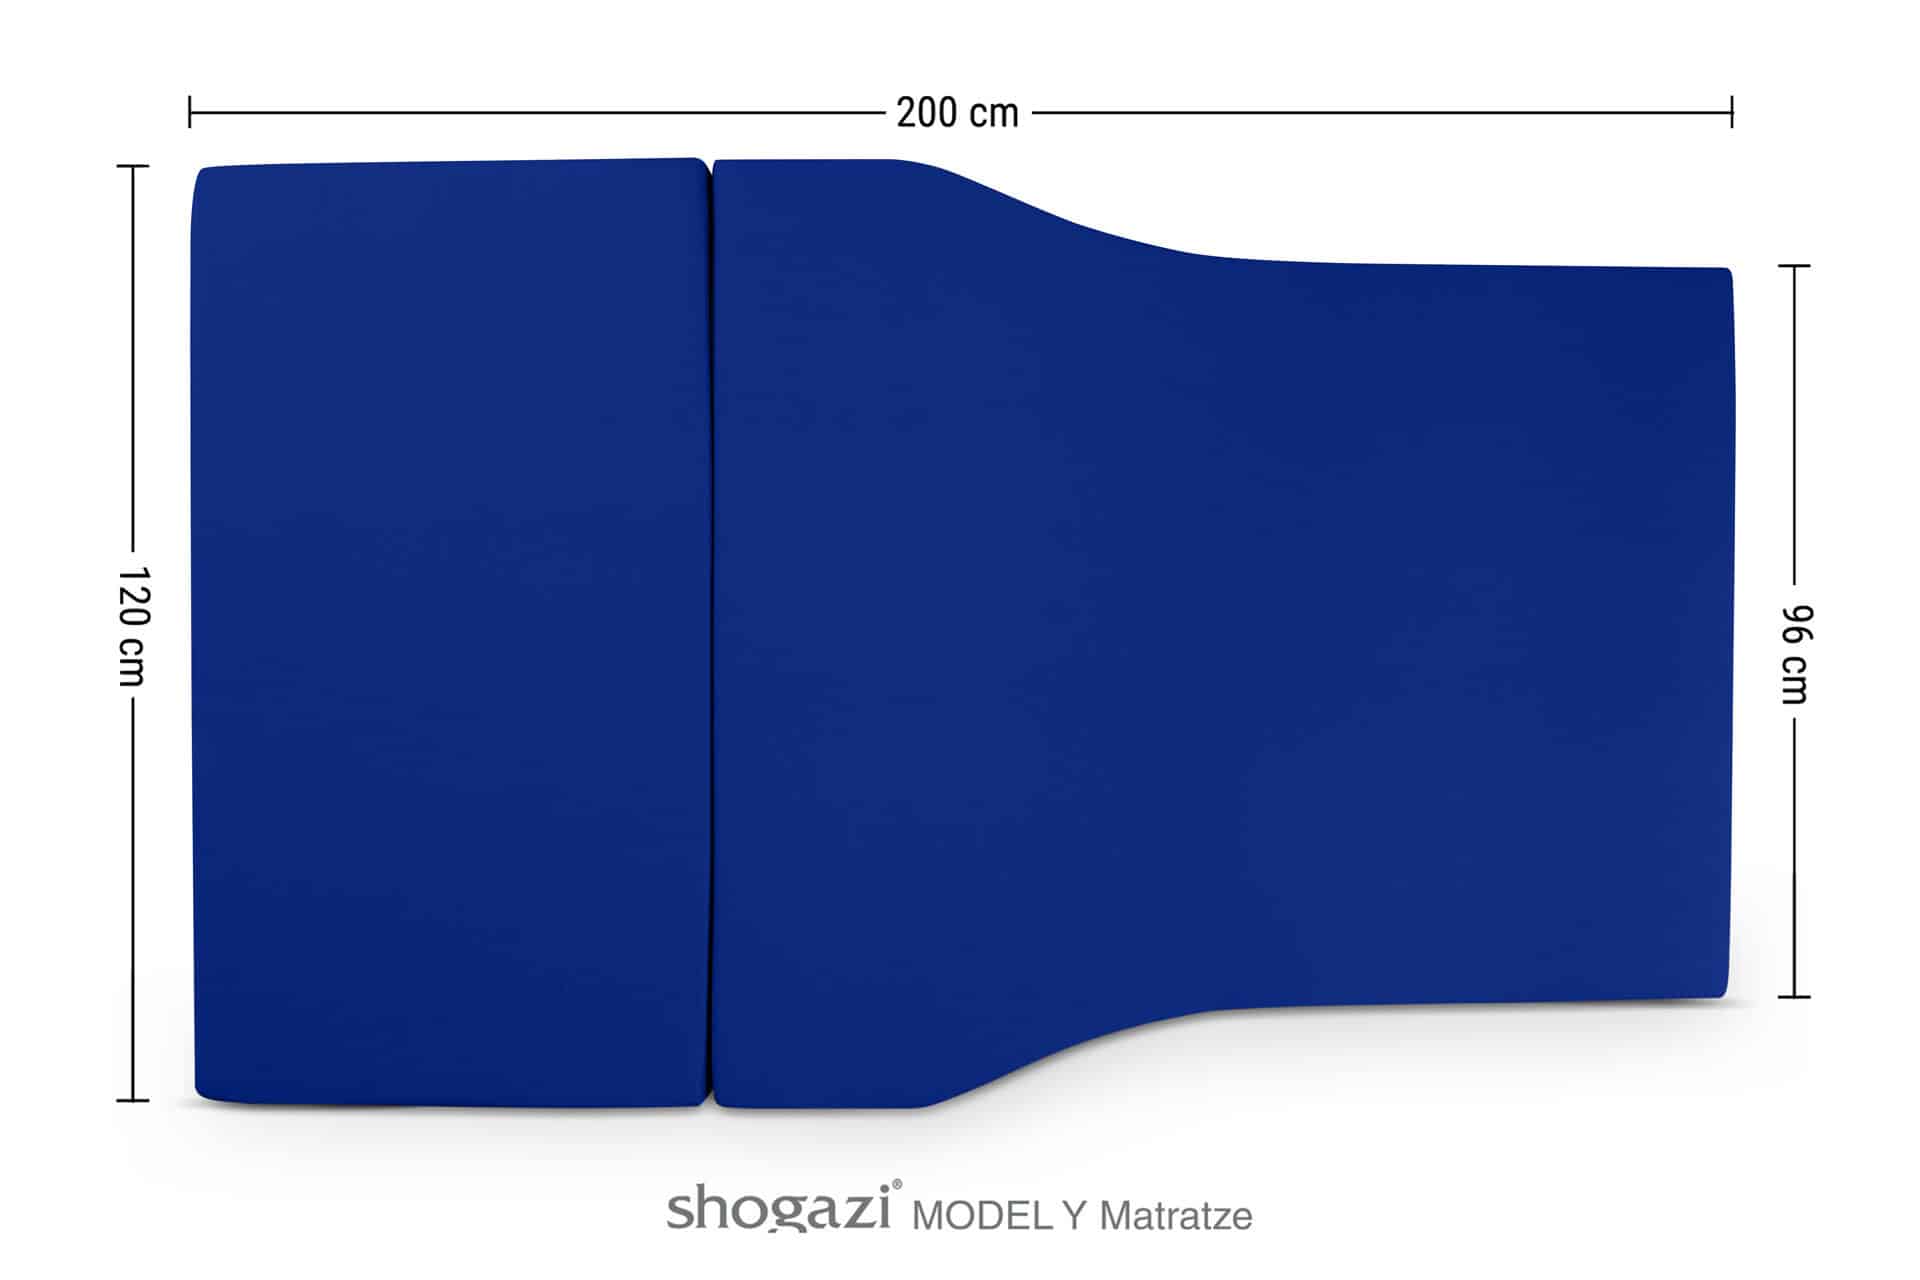 Tesla Model Y Matratze blau | shogazi Travel